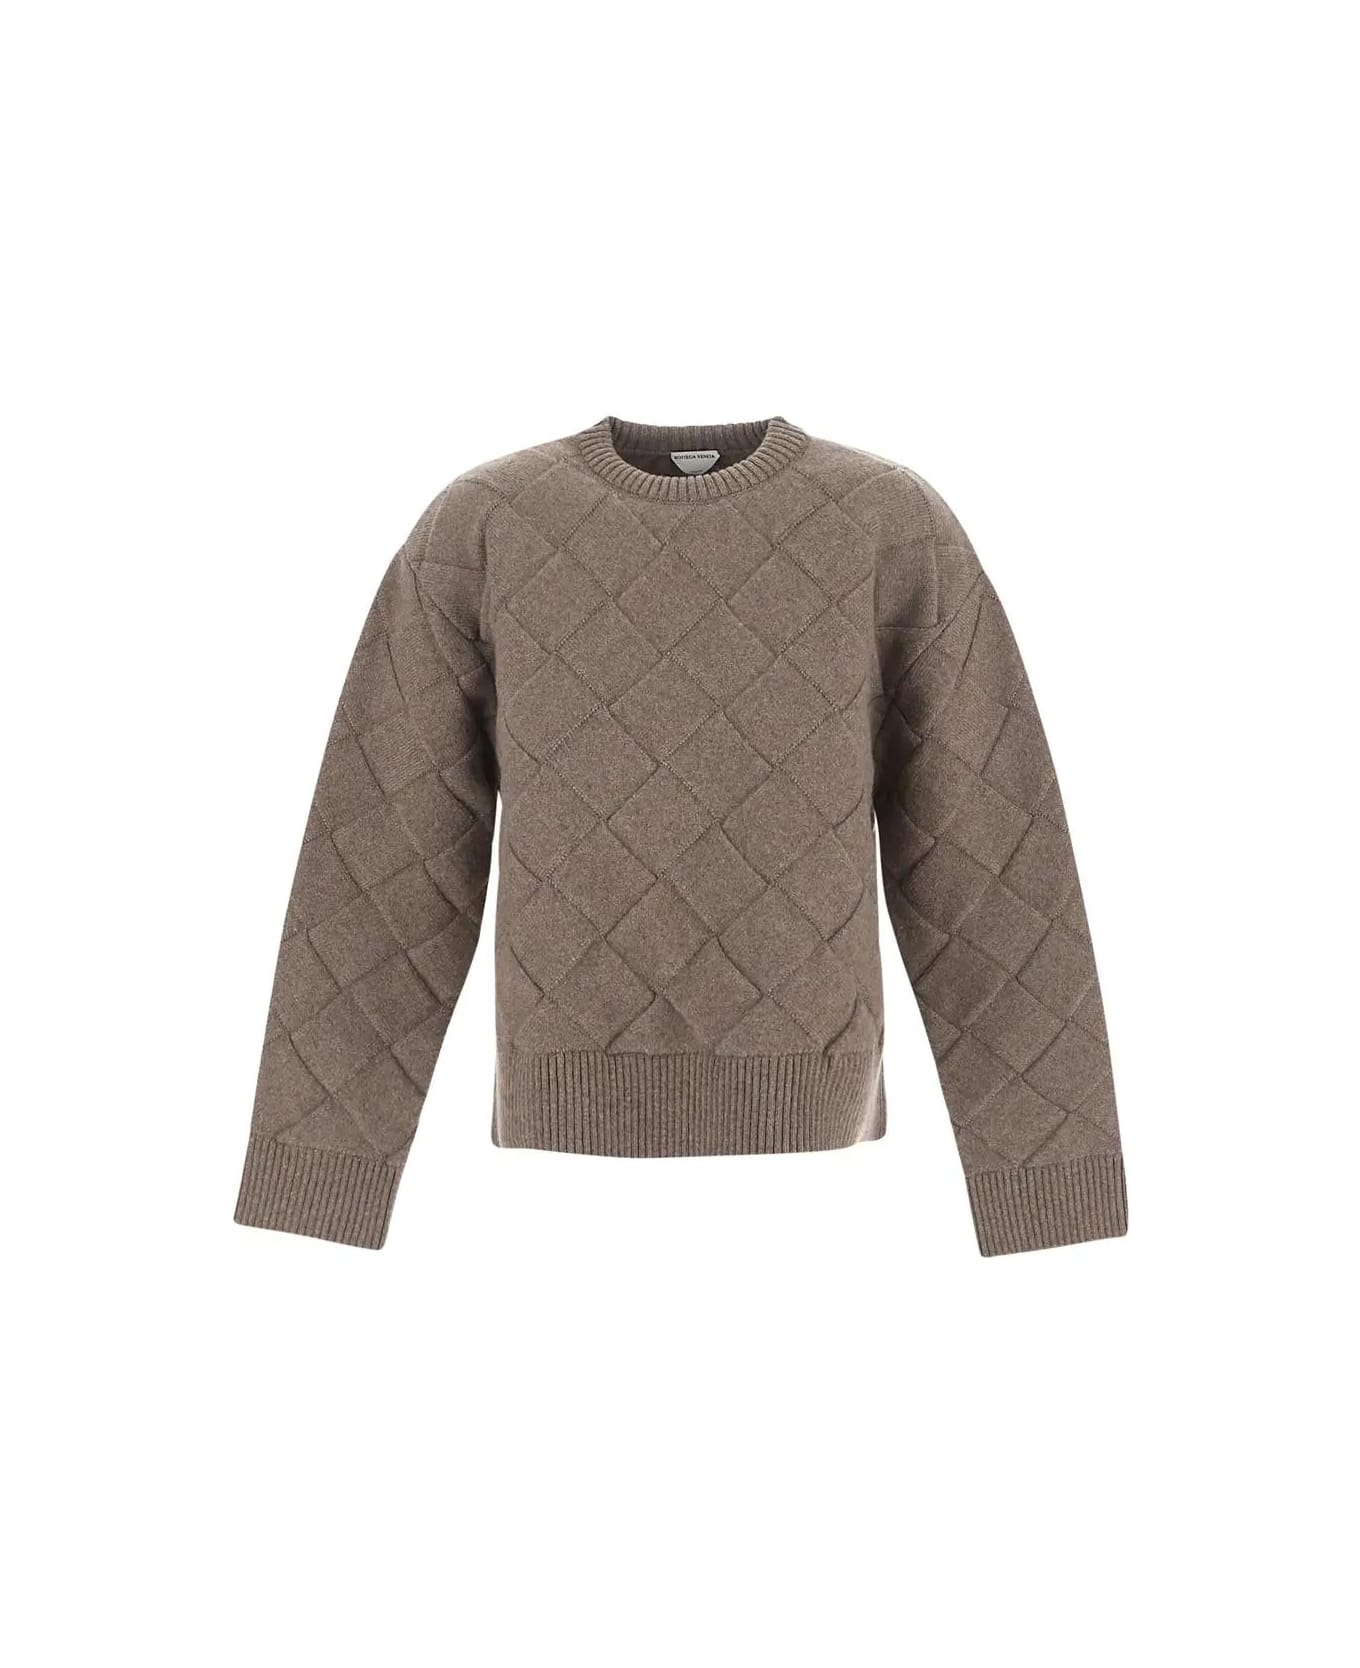 Bottega Veneta Weave Pattern Sweater - Nude & Neutrals